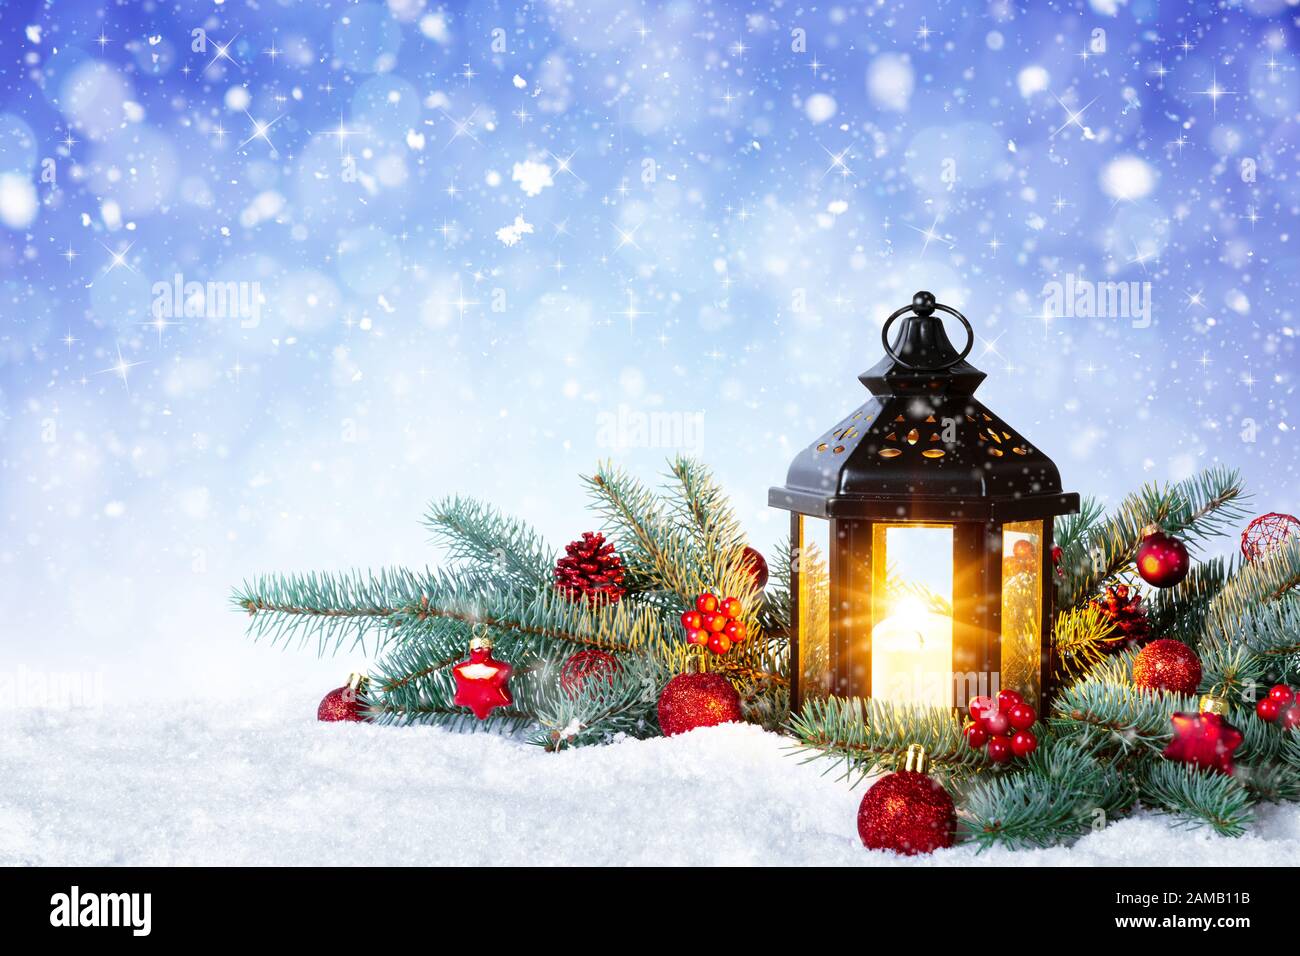 Đèn lồng Giáng Sinh nhấp nháy trên tuyết trắng, kèm theo cành thông và quả đủ sắc màu bắt mắt. Trông thật tuyệt vời phải không nào? Hãy xem ngay để cảm nhận một không khí ấm áp trong ngày lễ đặc biệt này.